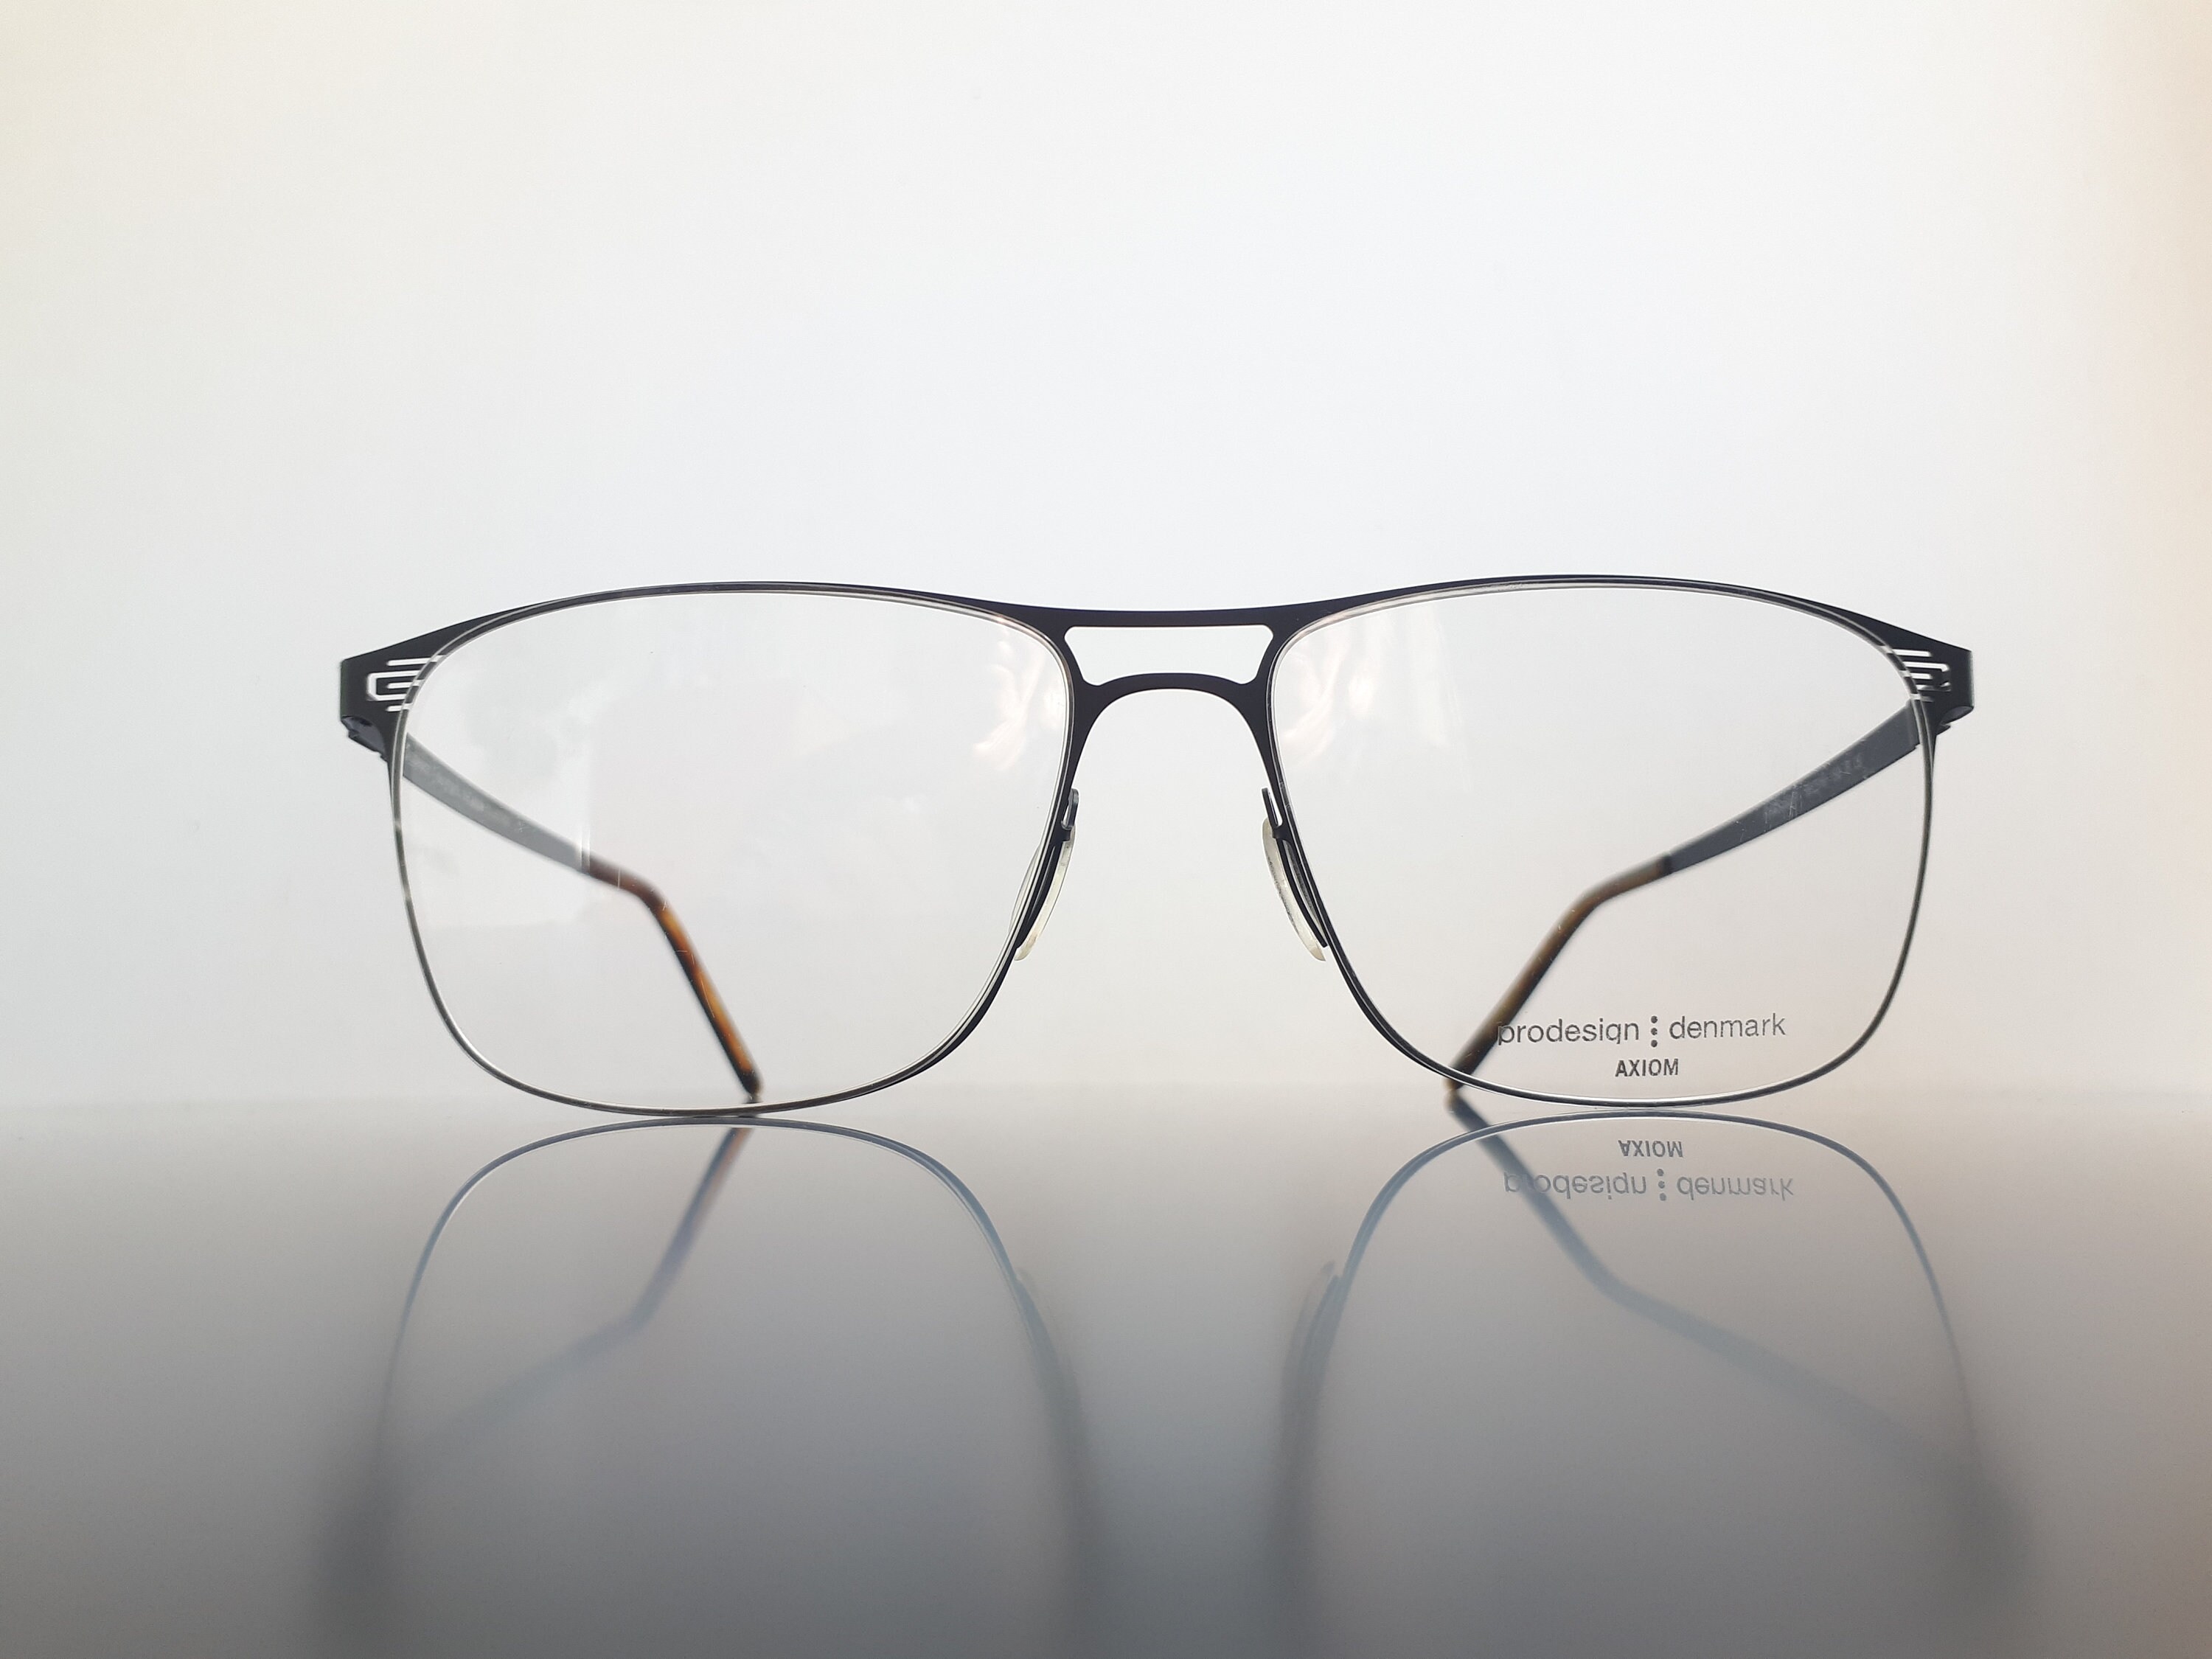 Prodesign 6164 Eyeglasses Black Pilot Shaped Men Glasses From - Etsy